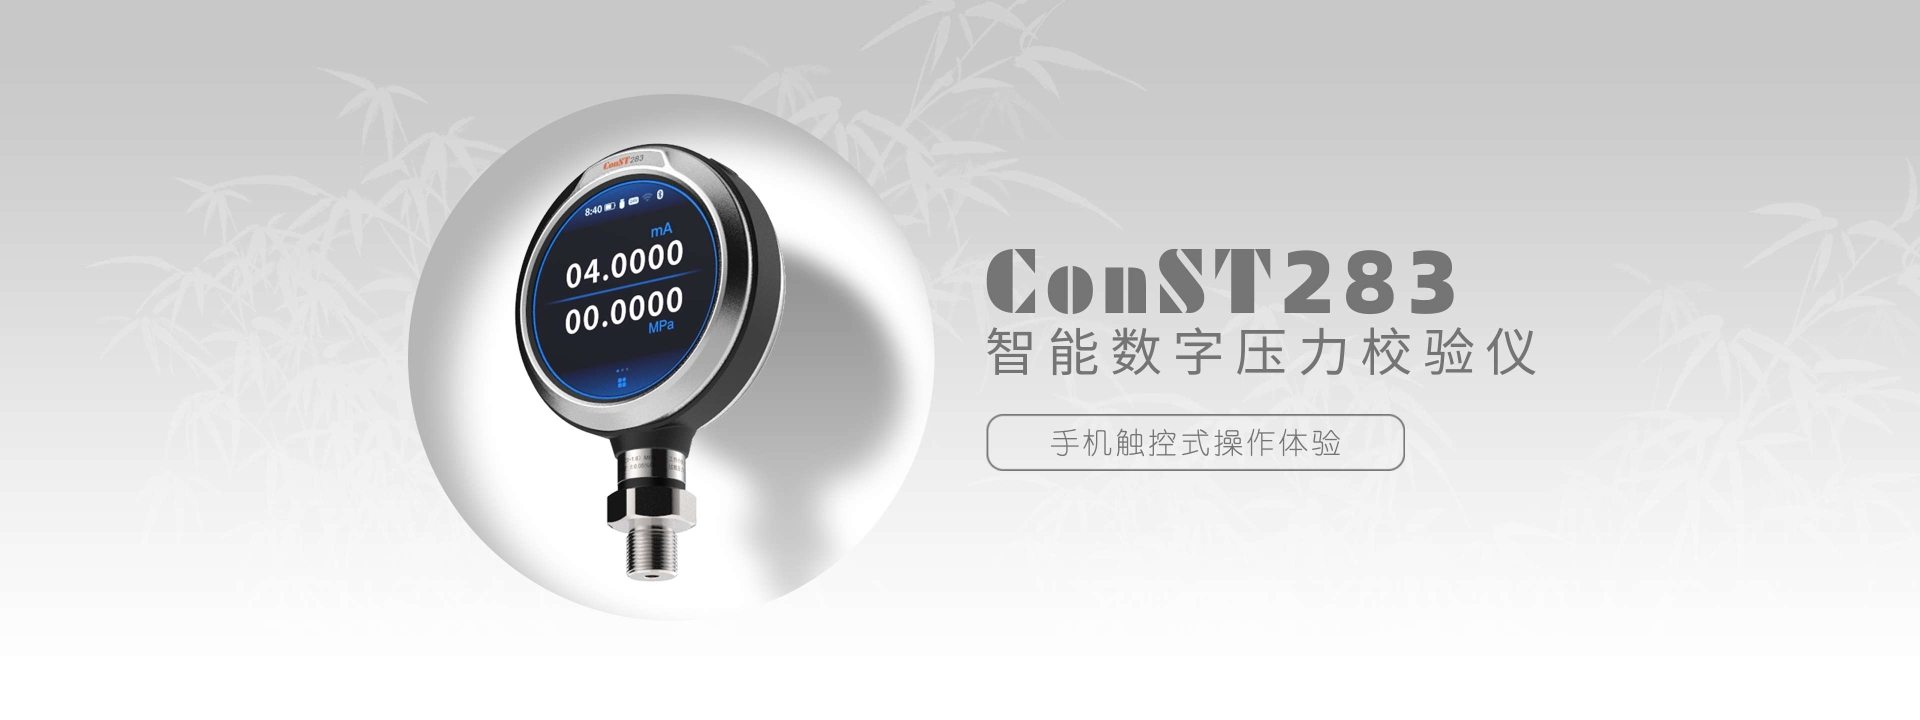 ConST283智能数字压力校验仪